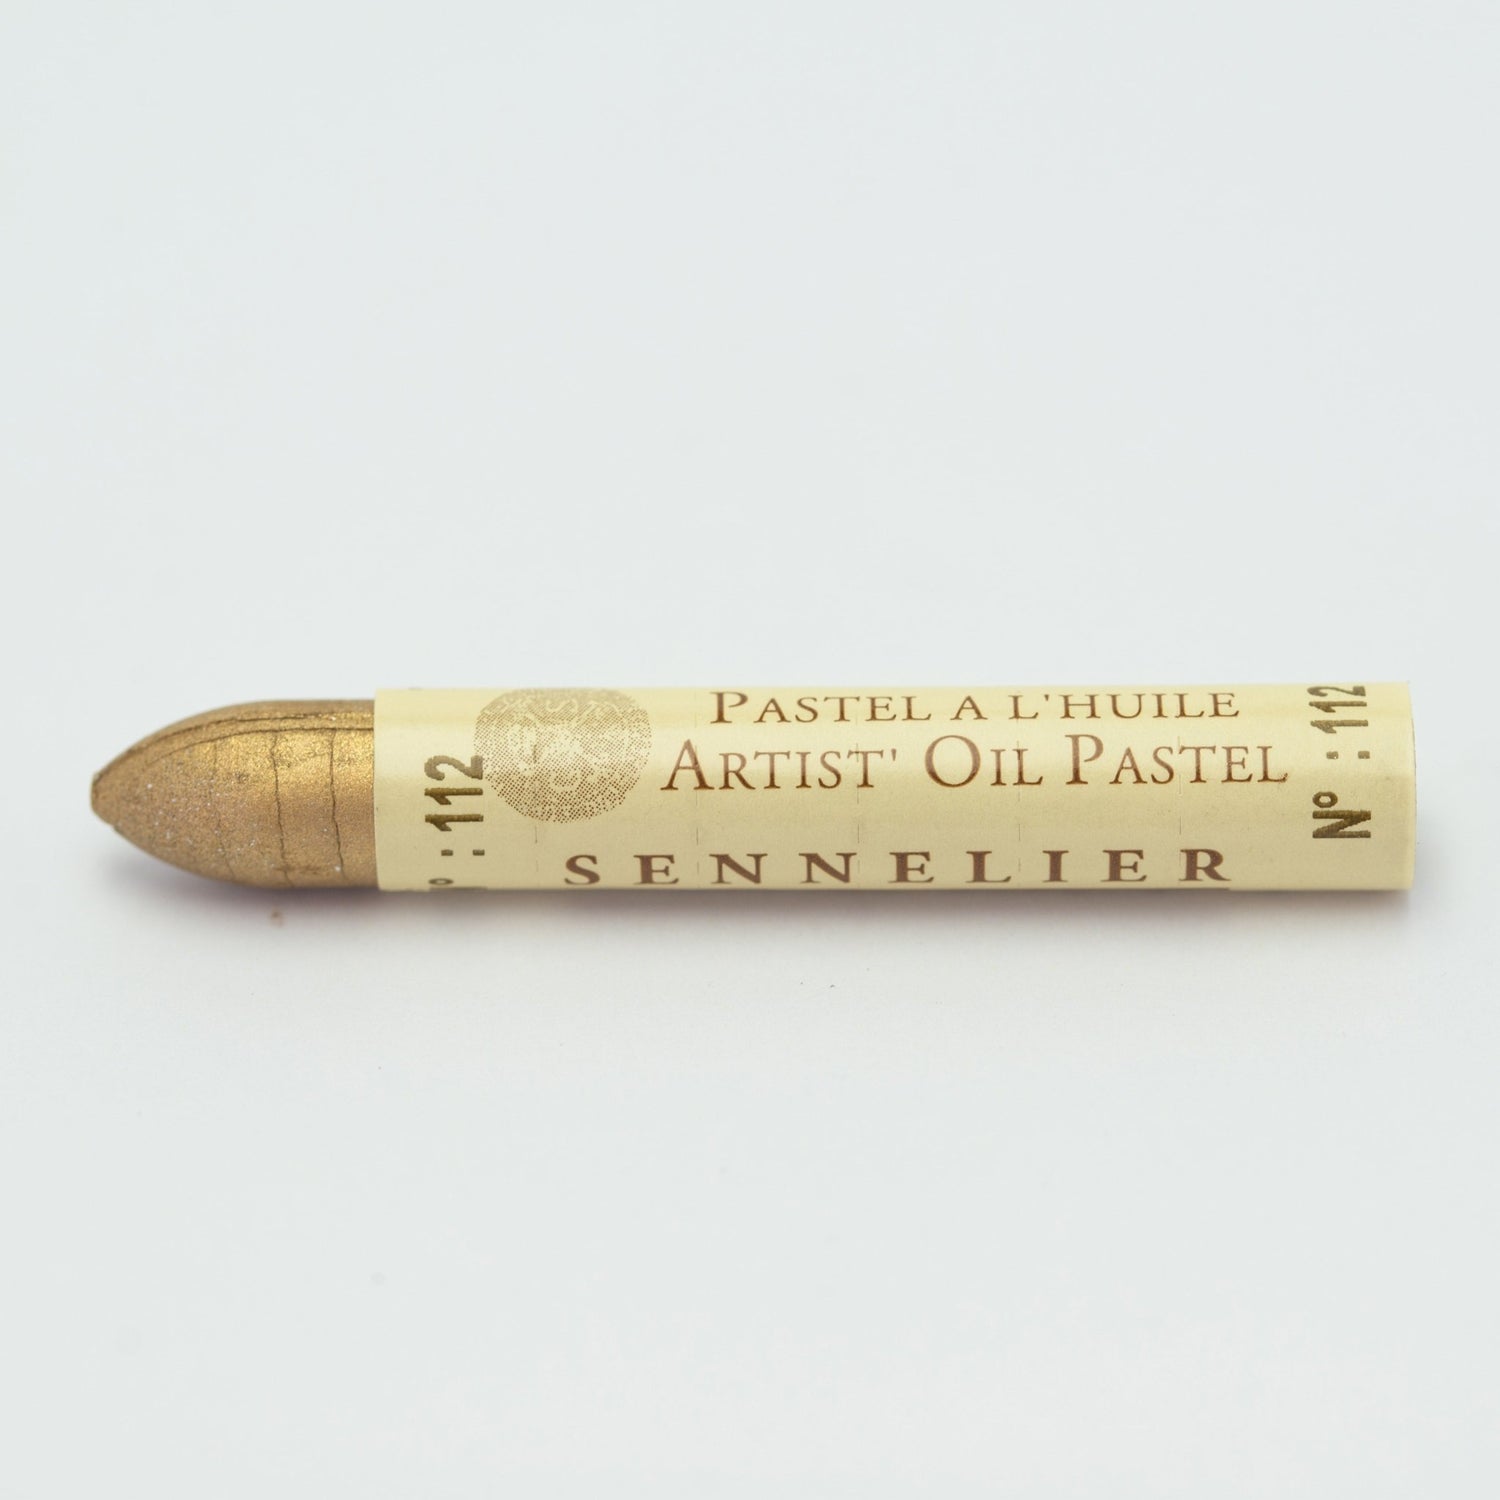 Sennelier Standard Oil Pastel 112 Iridescent Pale Gold - theartshop.com.au